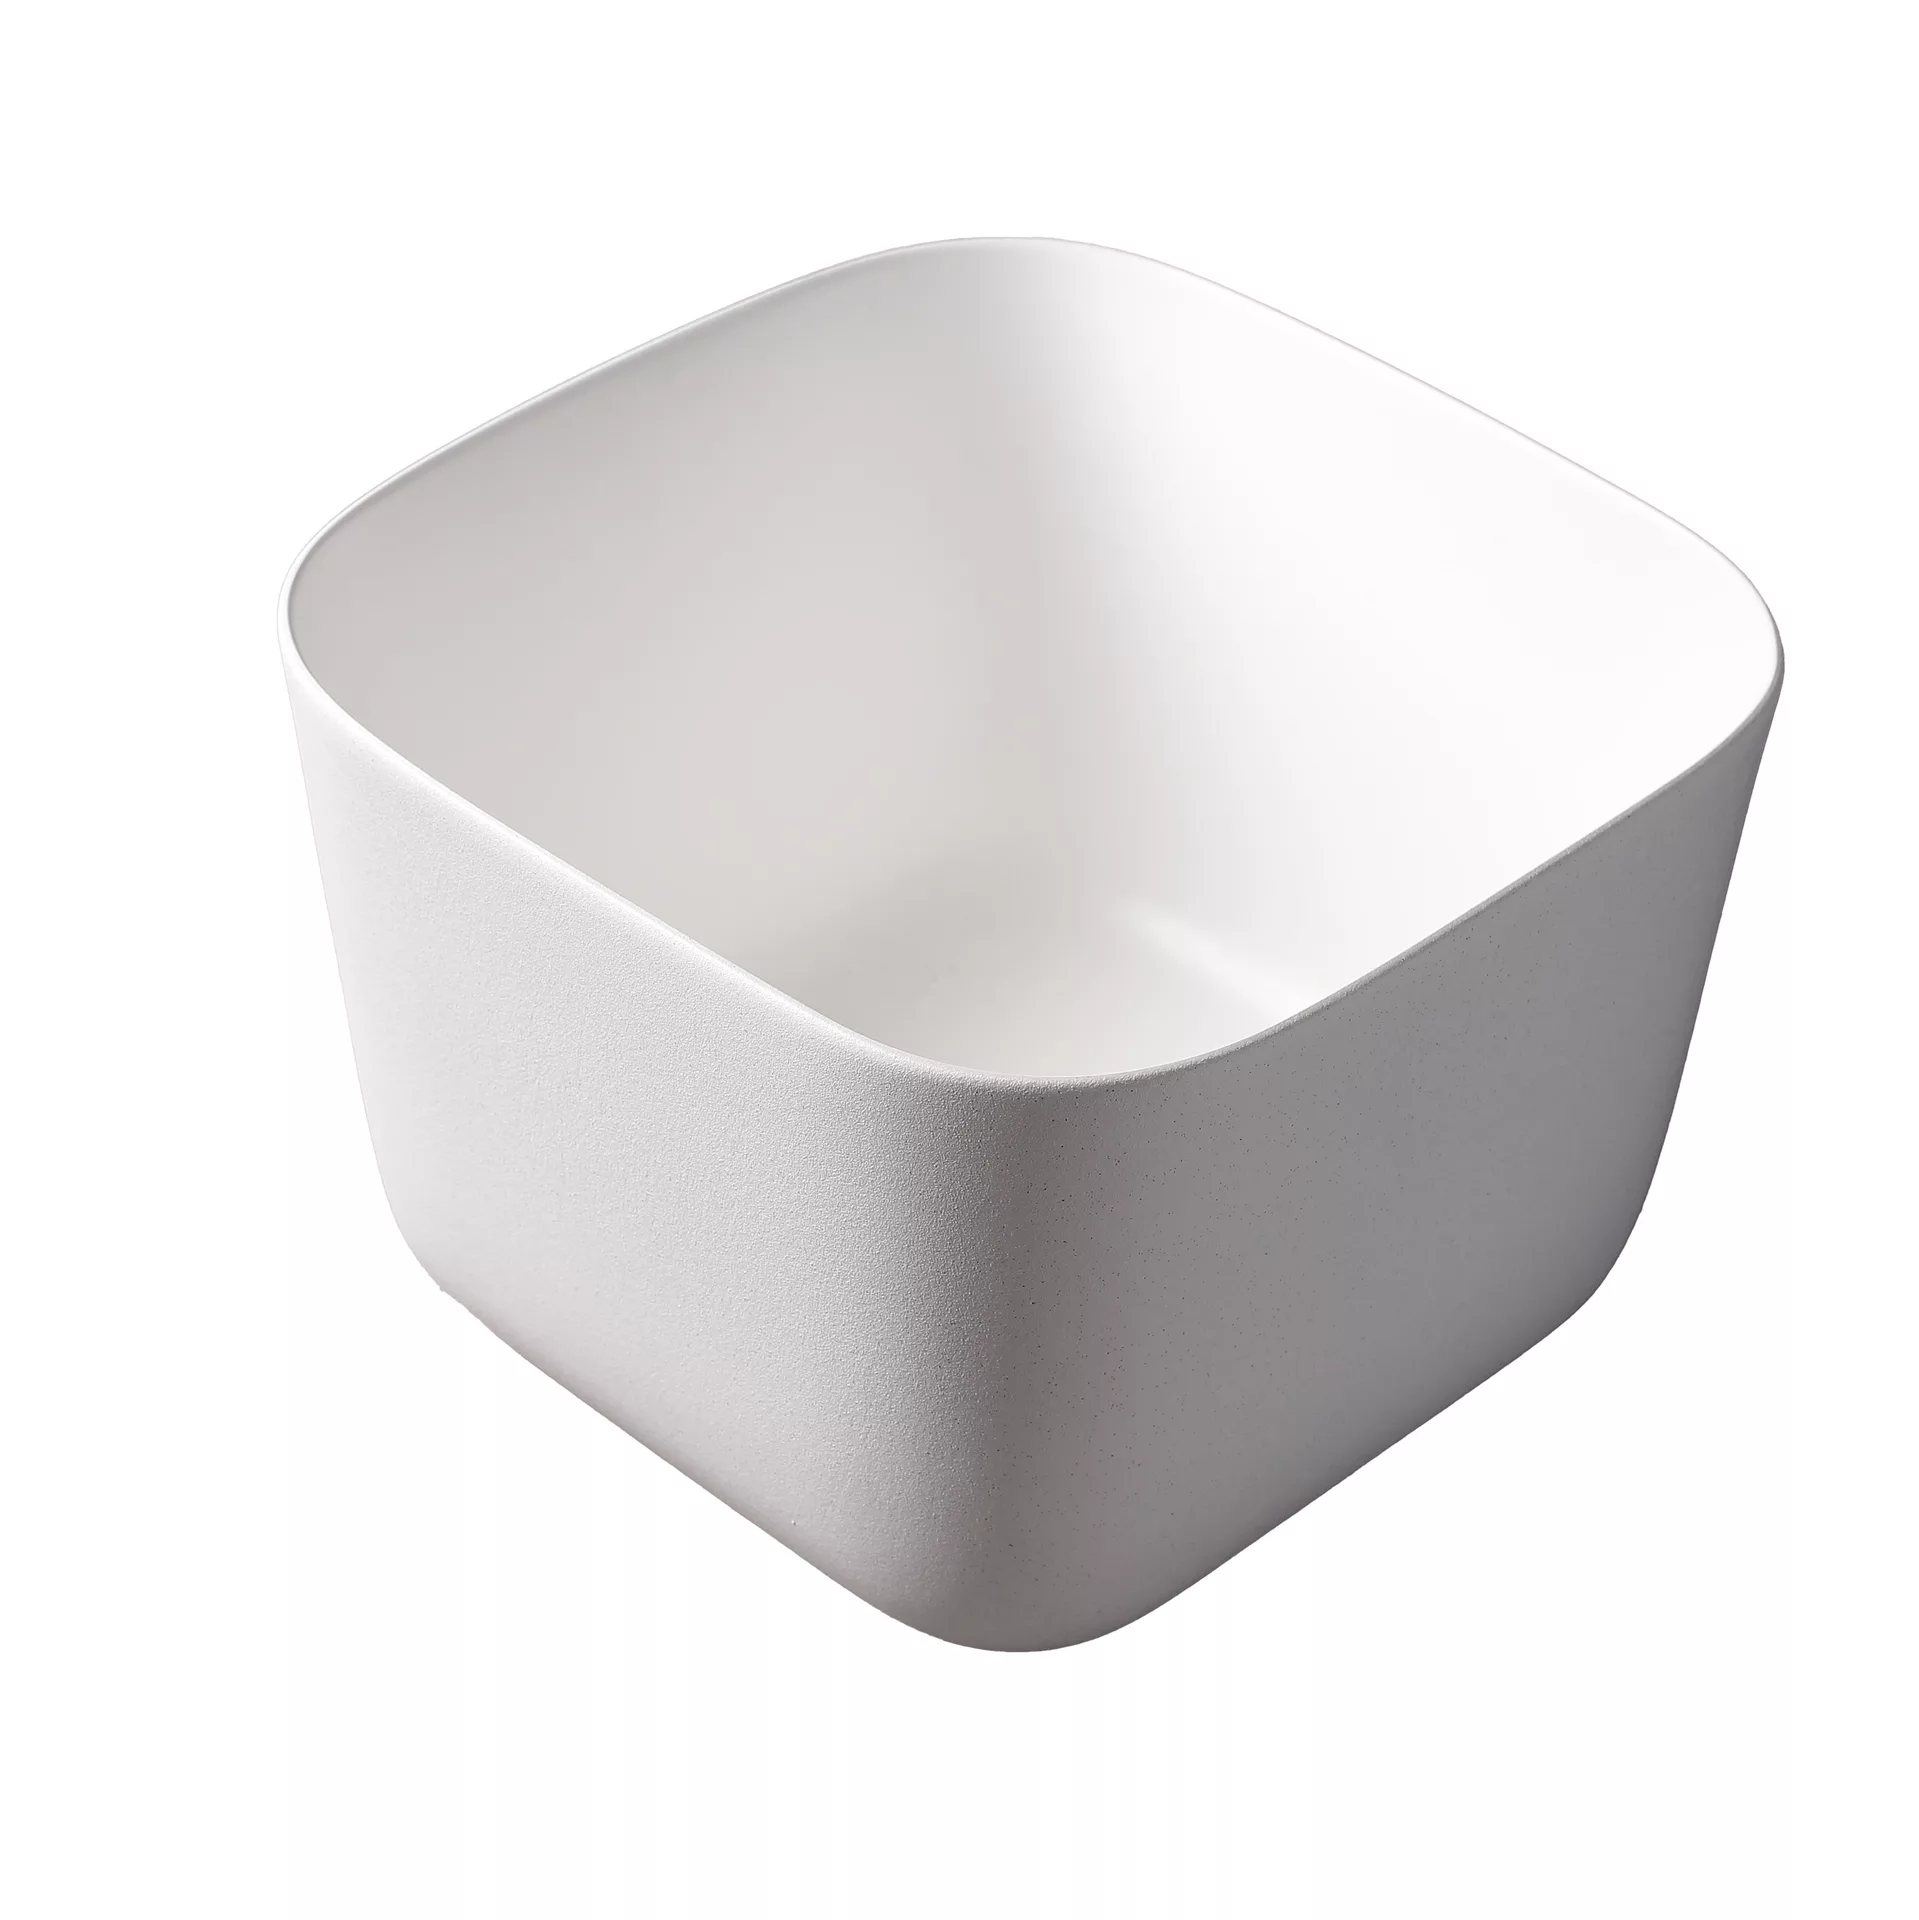 Накладная белая матовая раковина для ванной GiD N9301wg прямоугольная керамическая